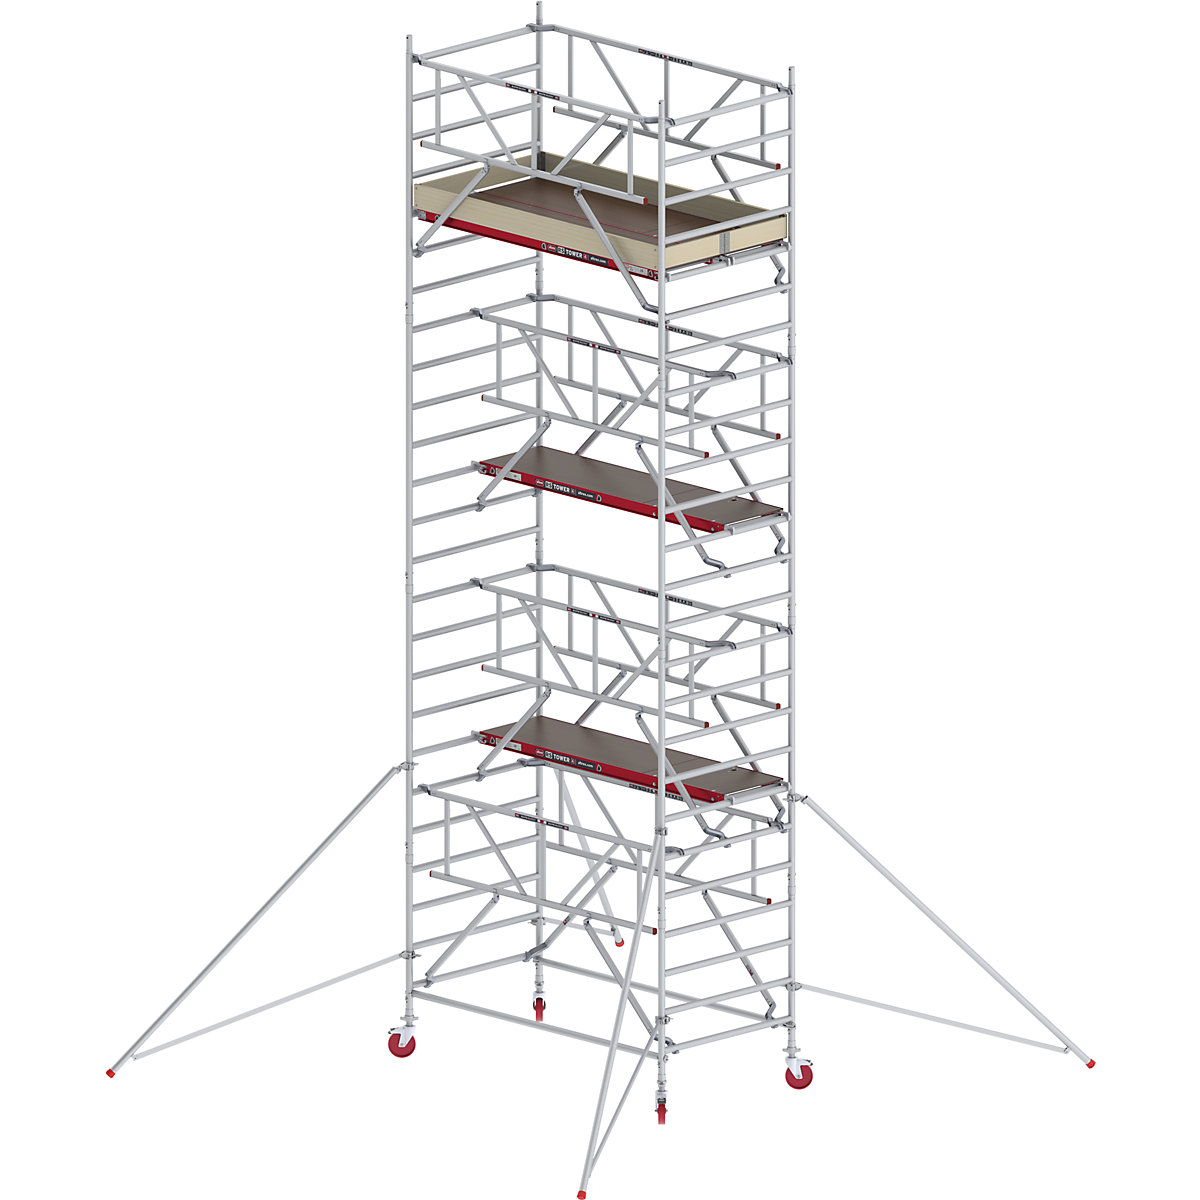 RS TOWER 42 széles mobil állvány Safe-Quick® rendszerrel – Altrex, fadobogó, hossza 1,85 m, munkamagasság 8,20 m-2